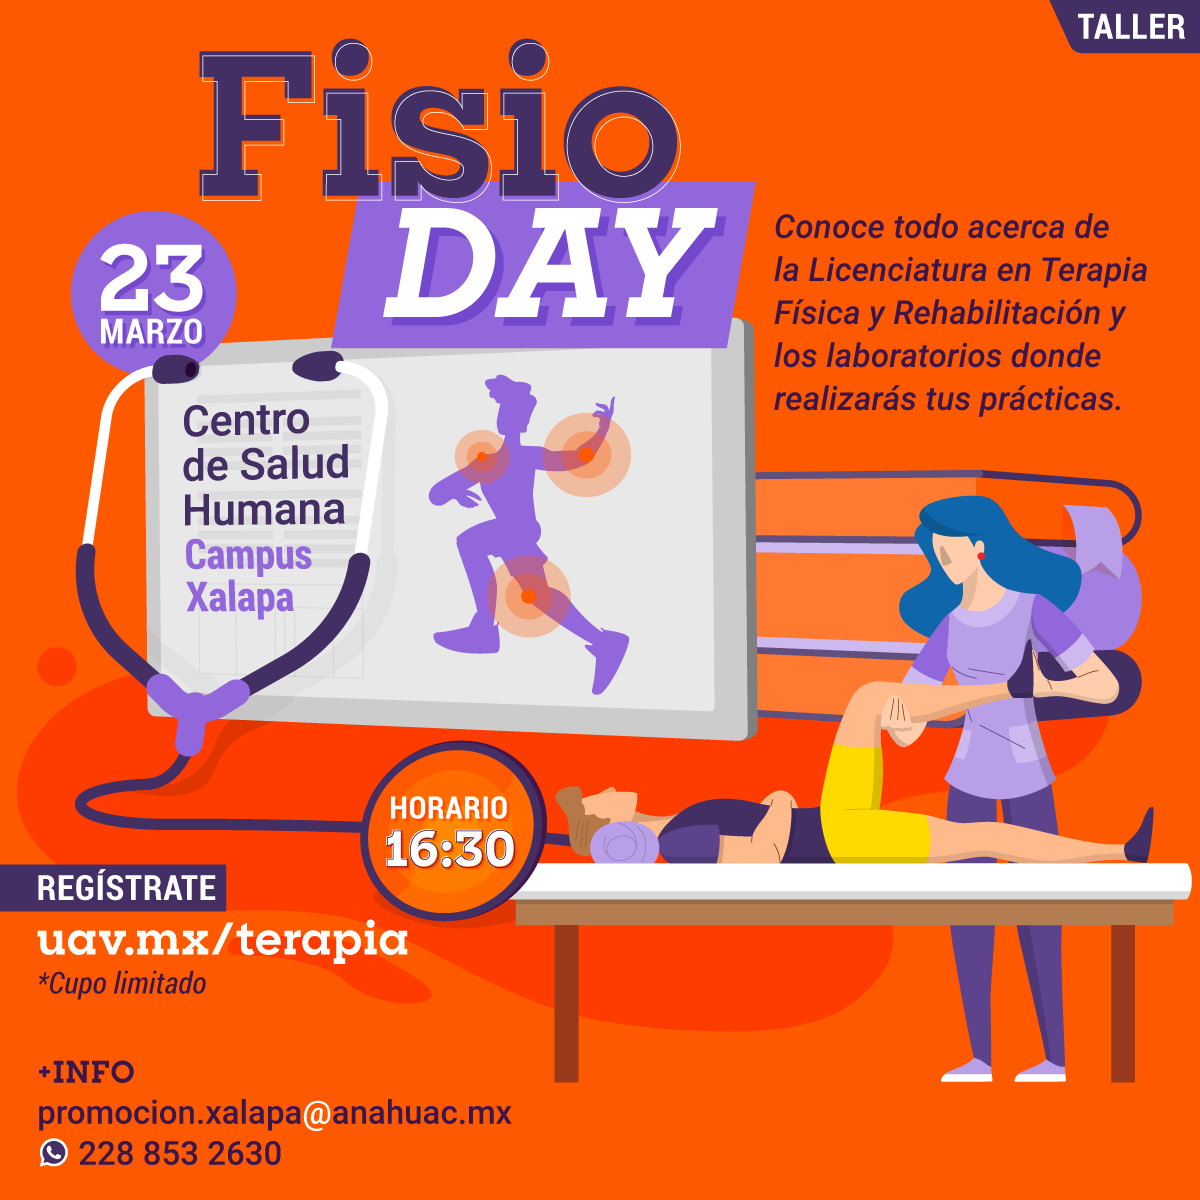 Fisio Day